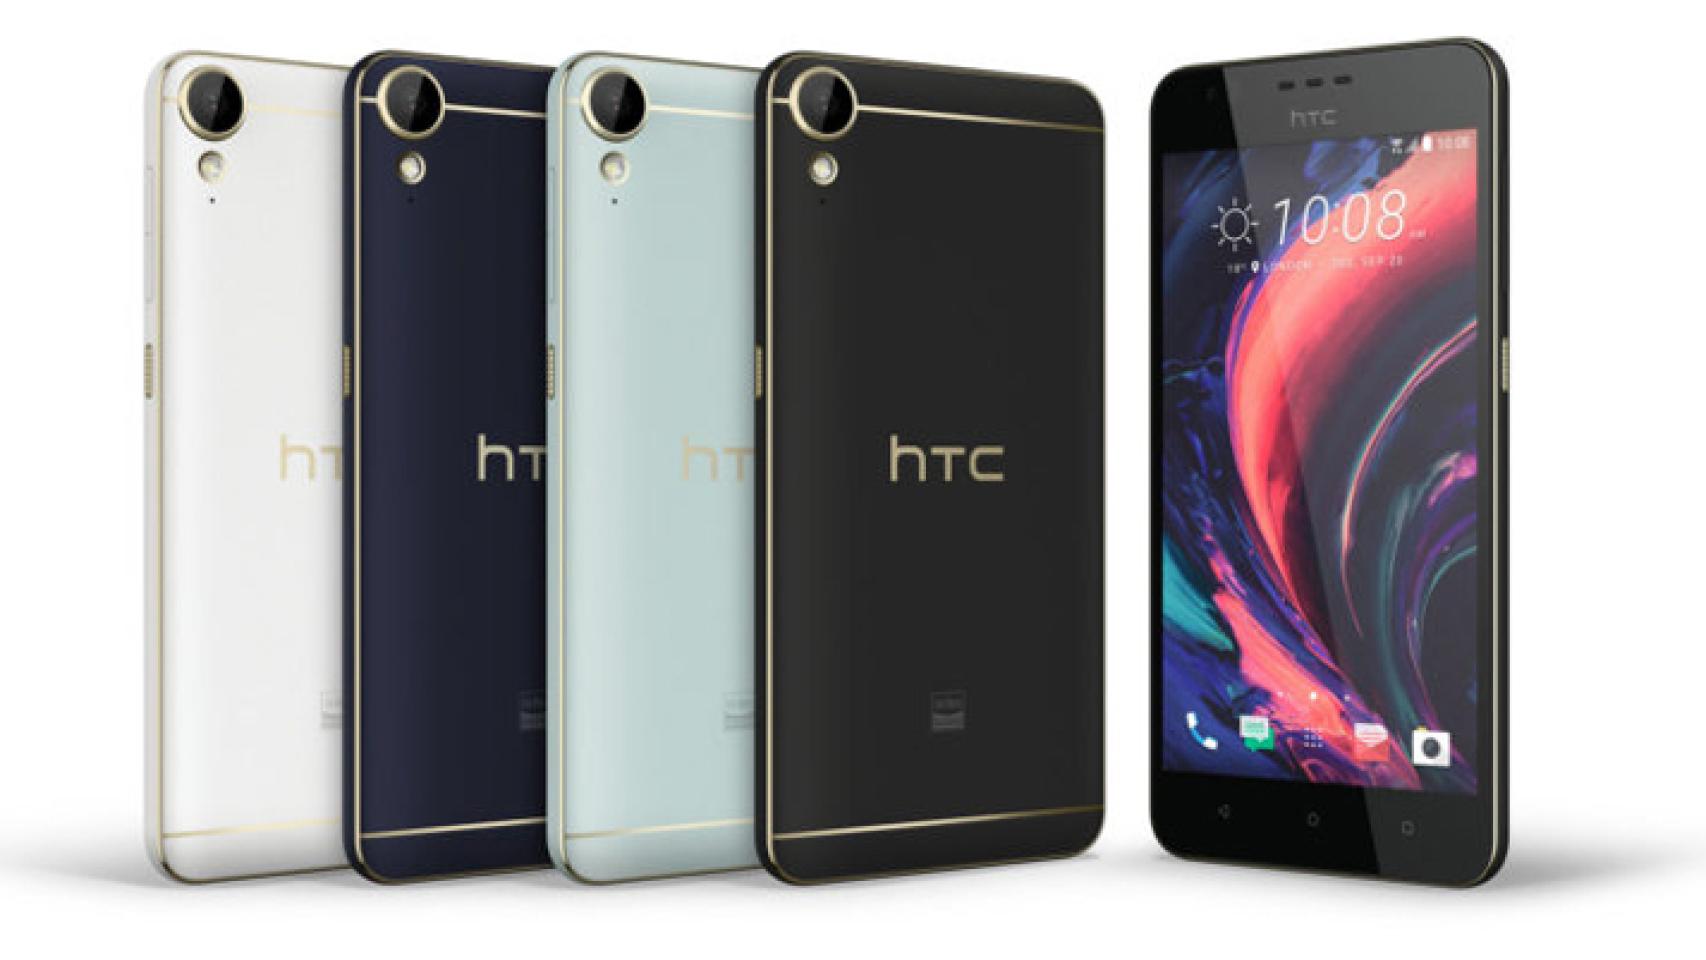 HTC Desire 10 Lifestyle, un nuevo rumbo para la gama Desire